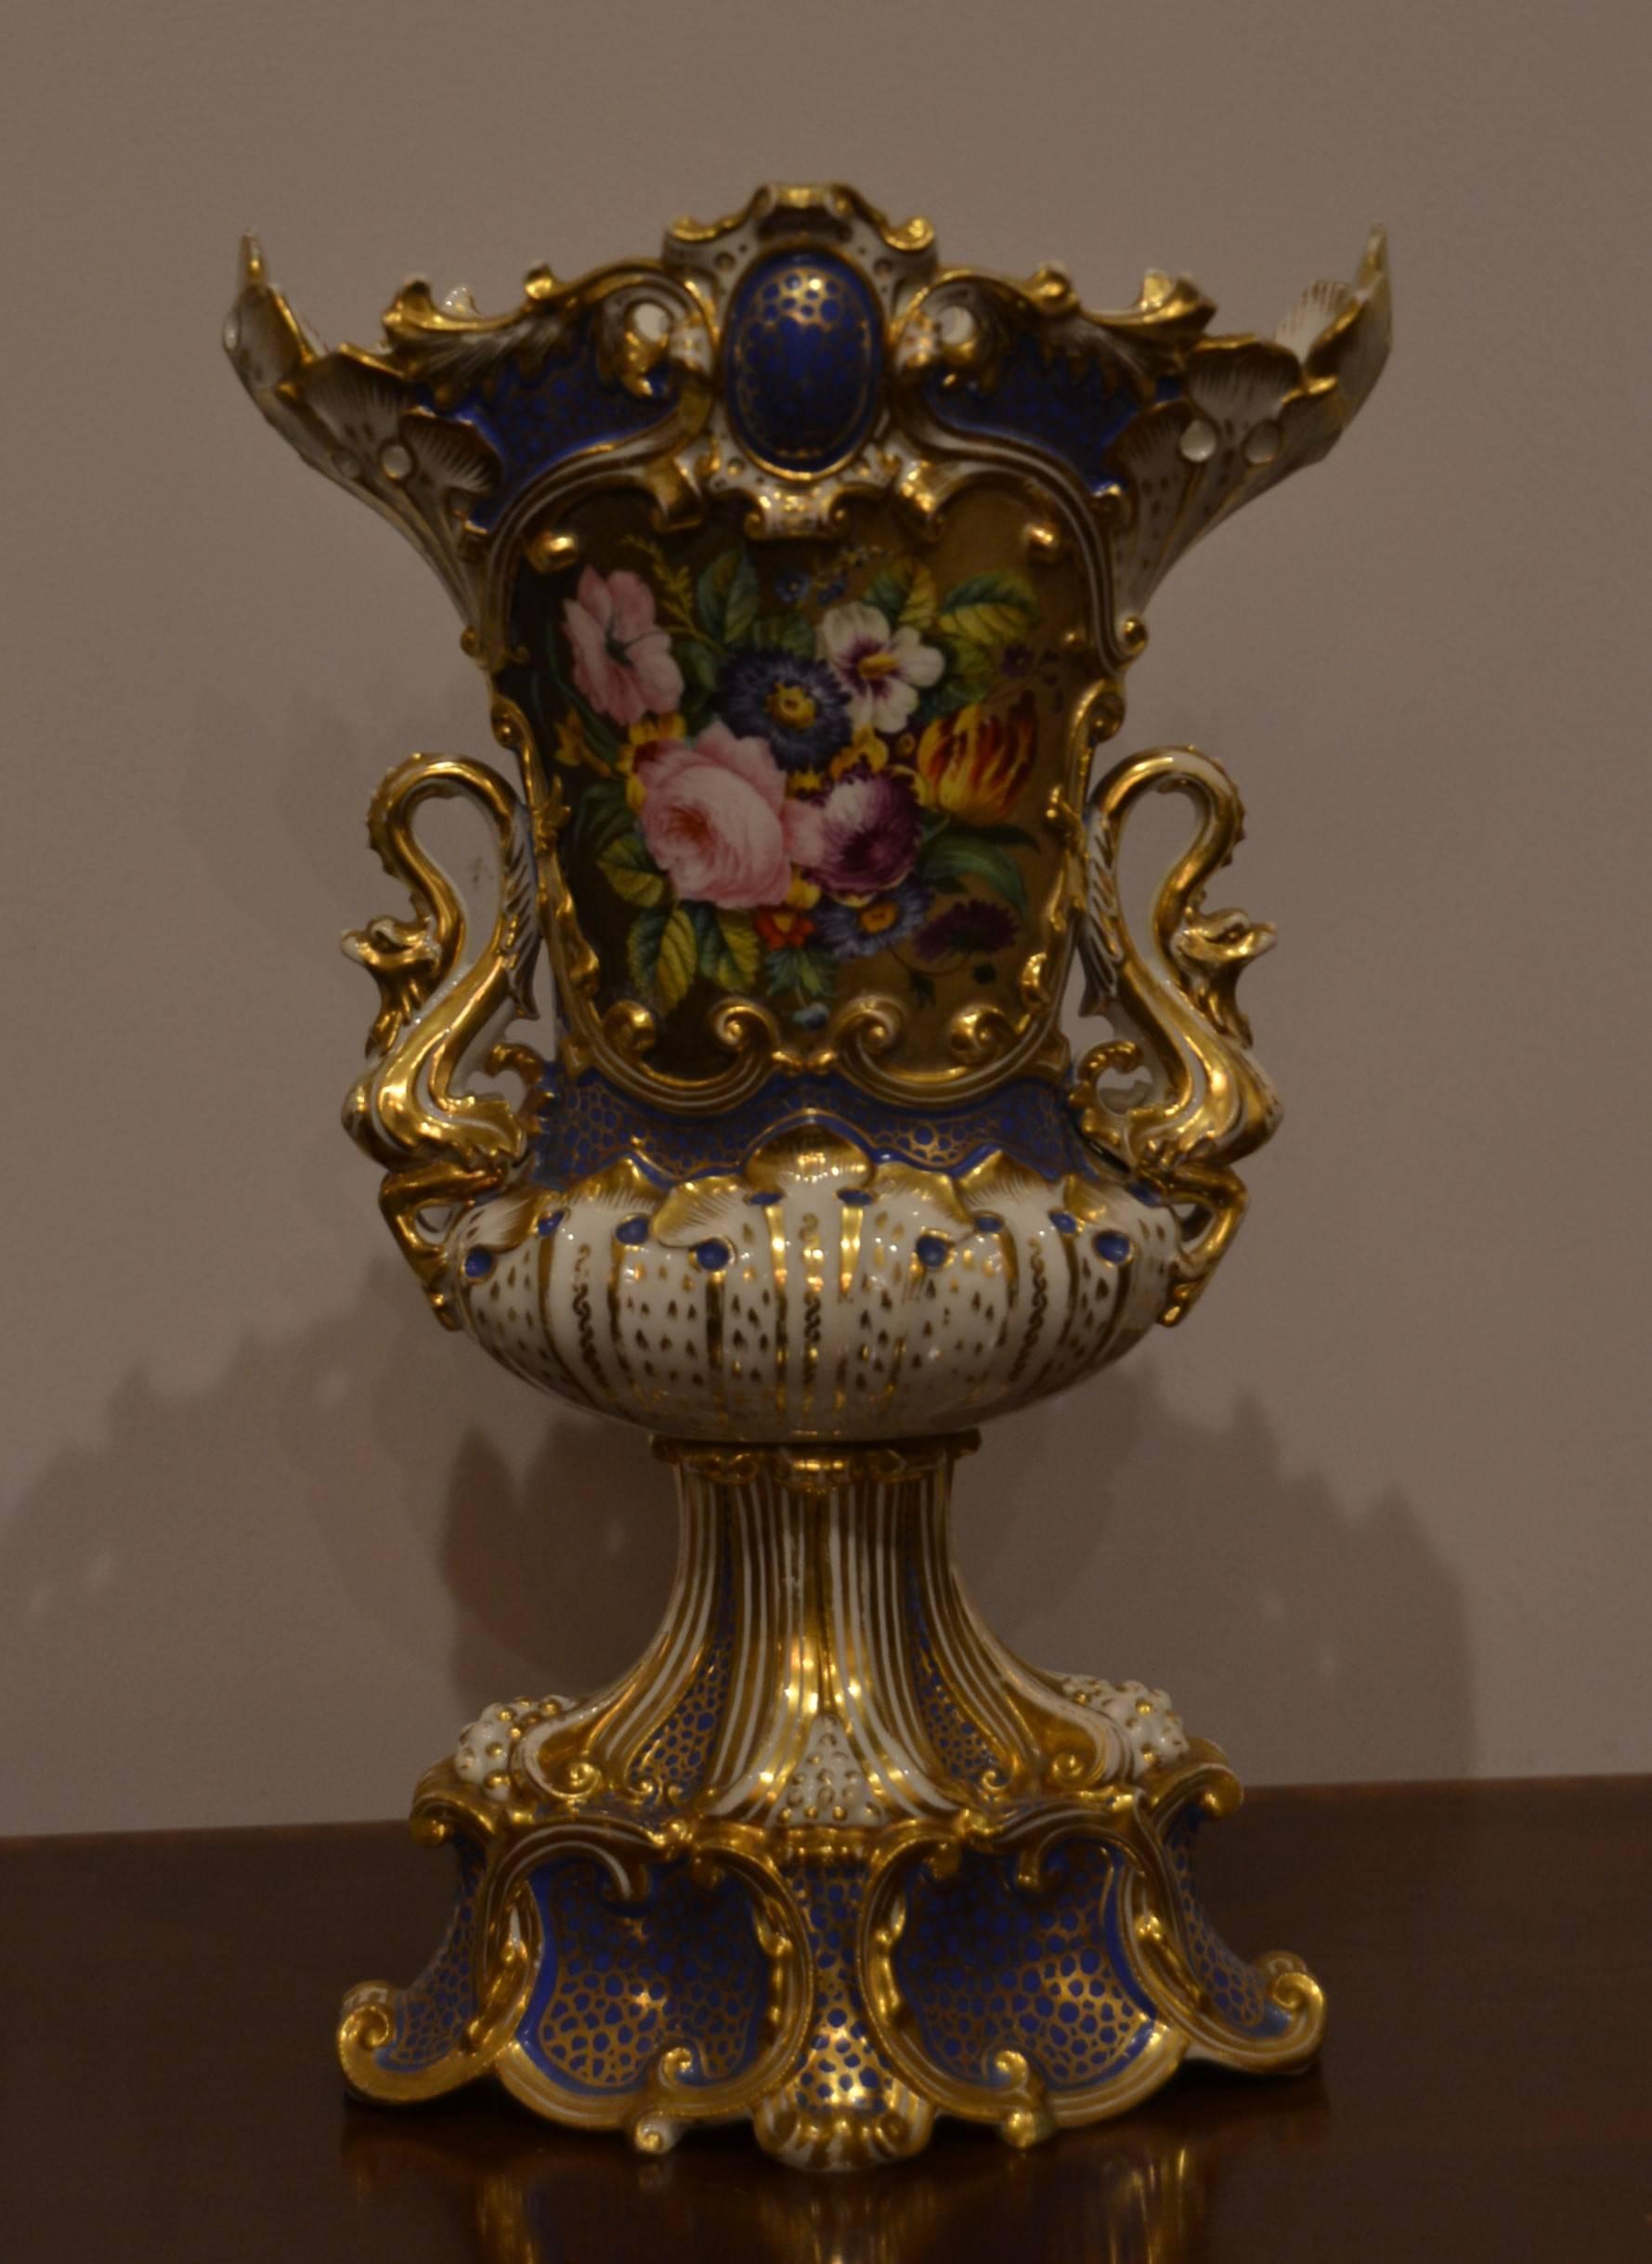 Paire de vases anciens du Vieux Paris peints à la main par Jacob Petit, vers 1850. Jacob Pettit était porcelainier et décorateur en France au XIXe siècle. Son travail est très plaisant et hautement collectionnable.